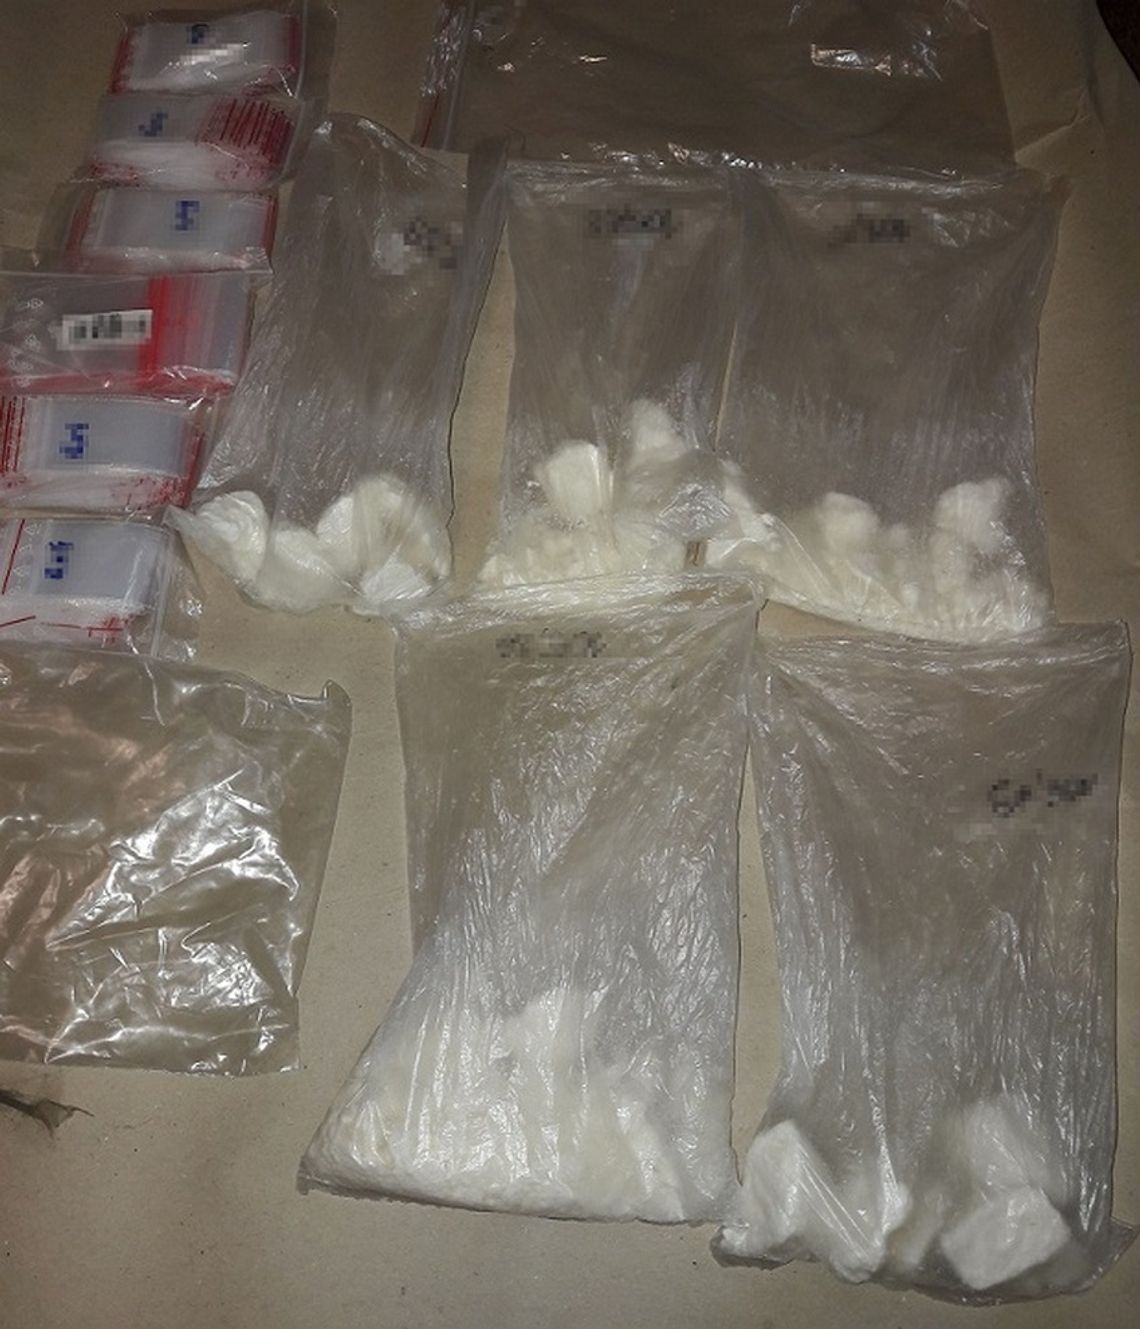 Kilkaset gramów amfetaminy w mieszkaniu 32-latka